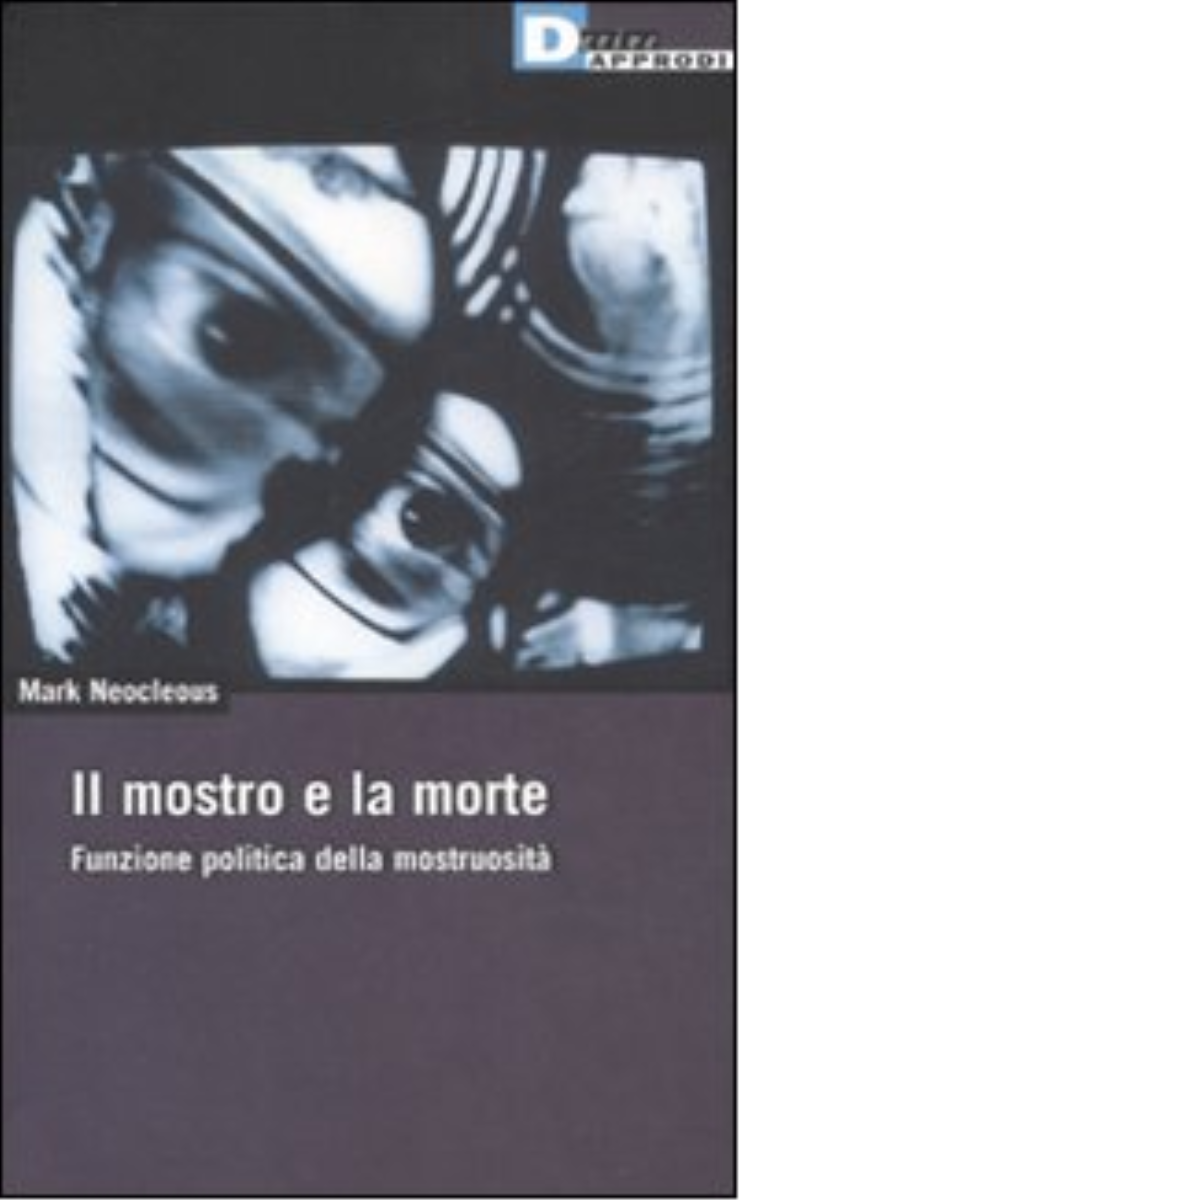 IL MOSTRO E LA MORTE. di MARK NEOCLEOUS - DeriveApprodi editore, 2008